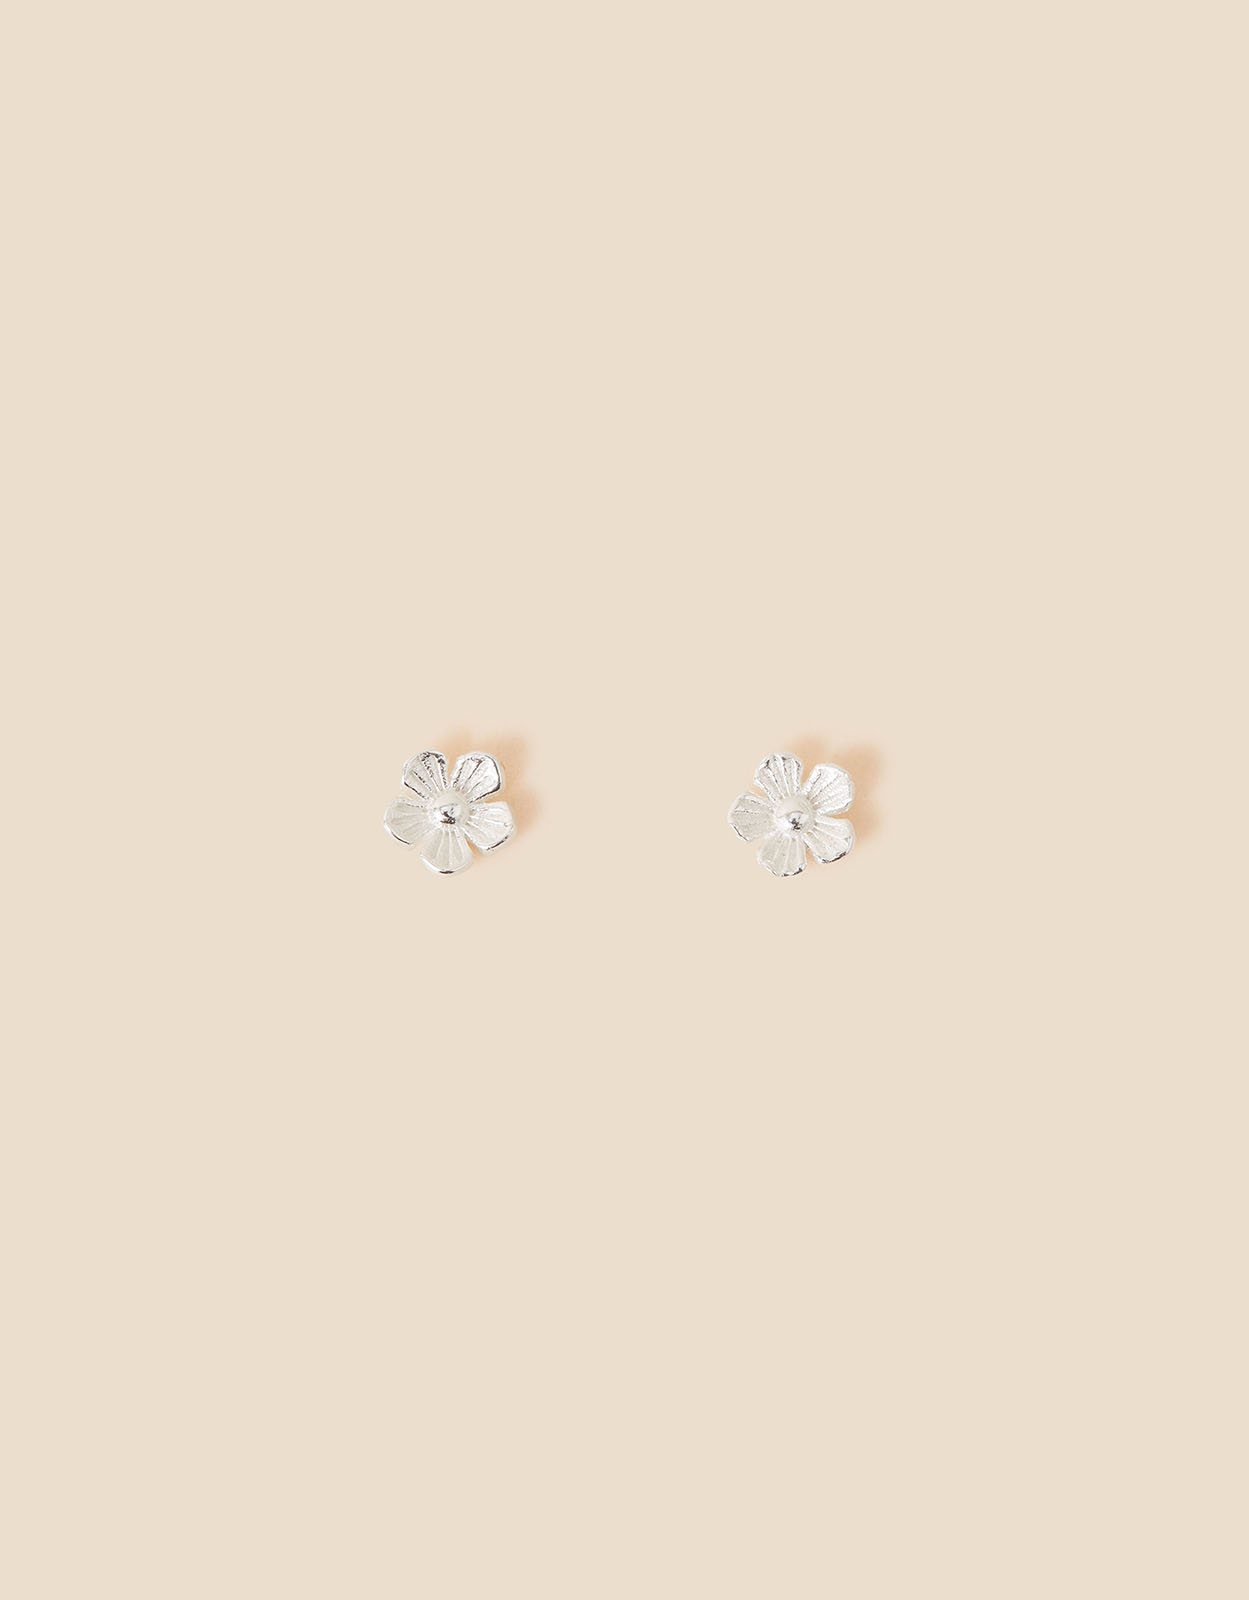 Accessorize Women's 925 Sterling Silver Flower Stud Earrings, Size: 0.5cm